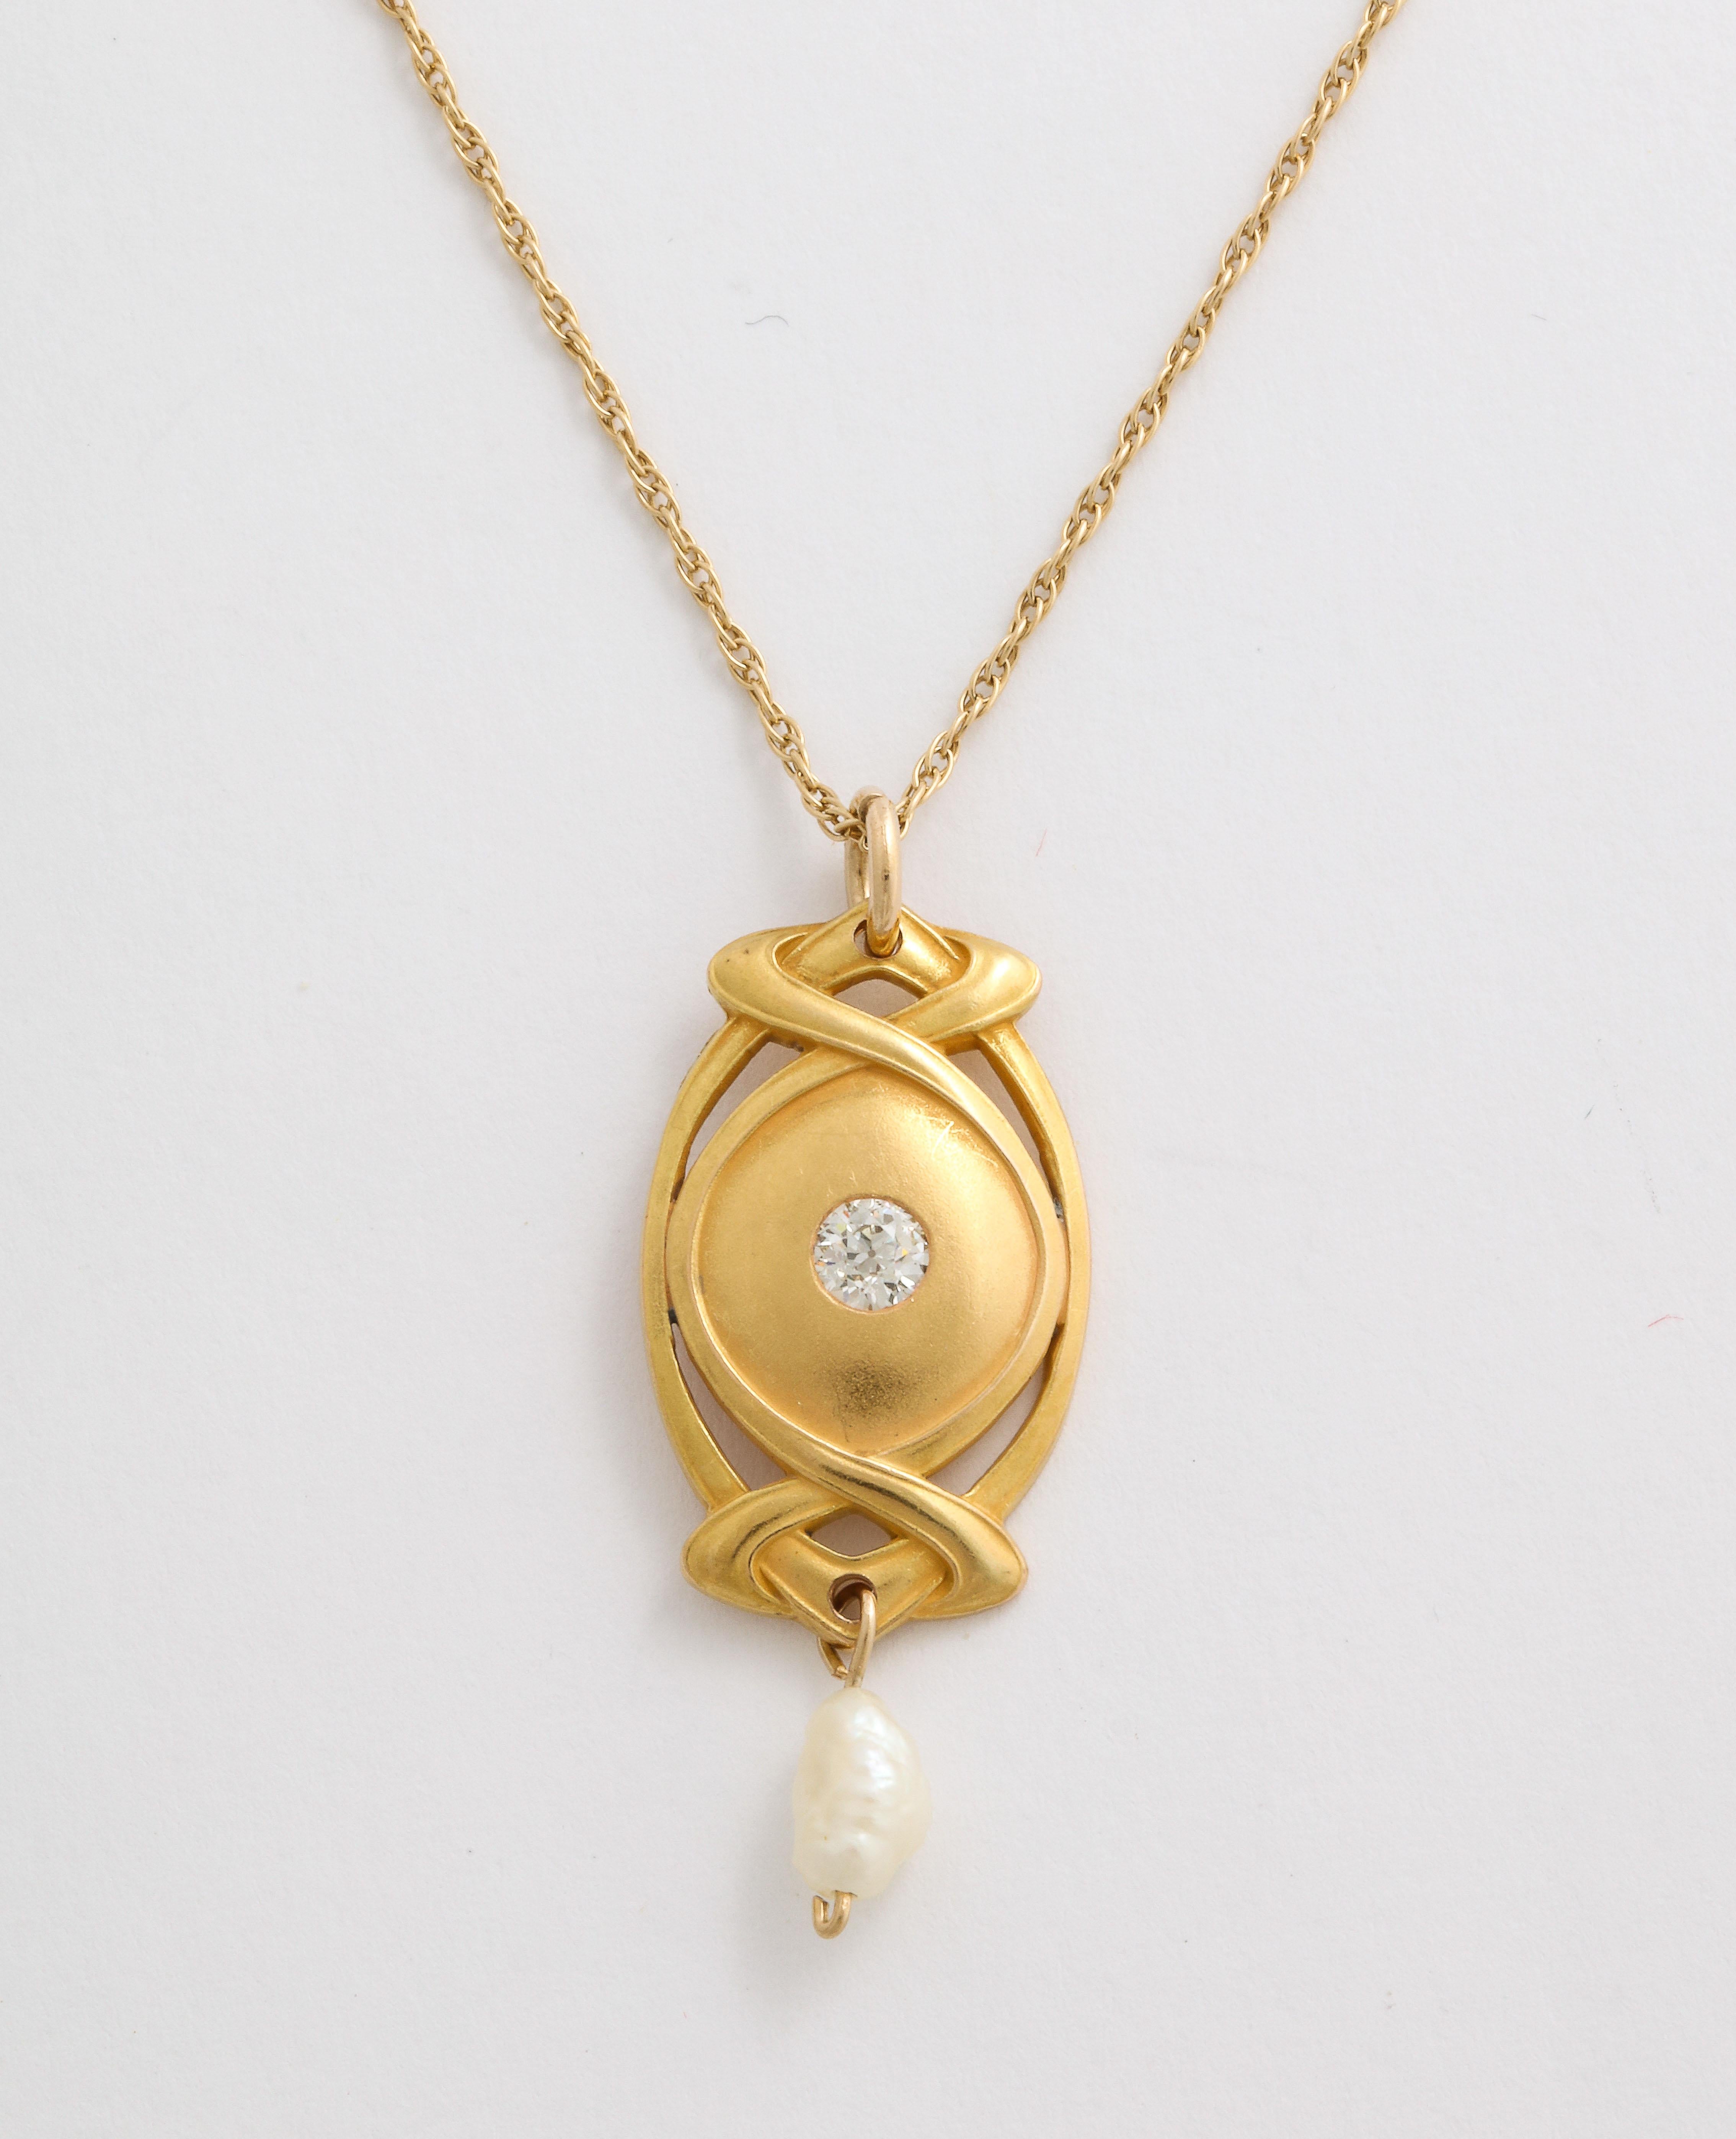 Un pendentif Art nouveau en or 14 Kt, délicatement fleuri, suspend une perle blister et possède, au centre, un diamant blanc brillant, ancien diamant d'environ .13 cts. Les perles boursouflées étaient souvent un choix pendant la période Art nouveau.